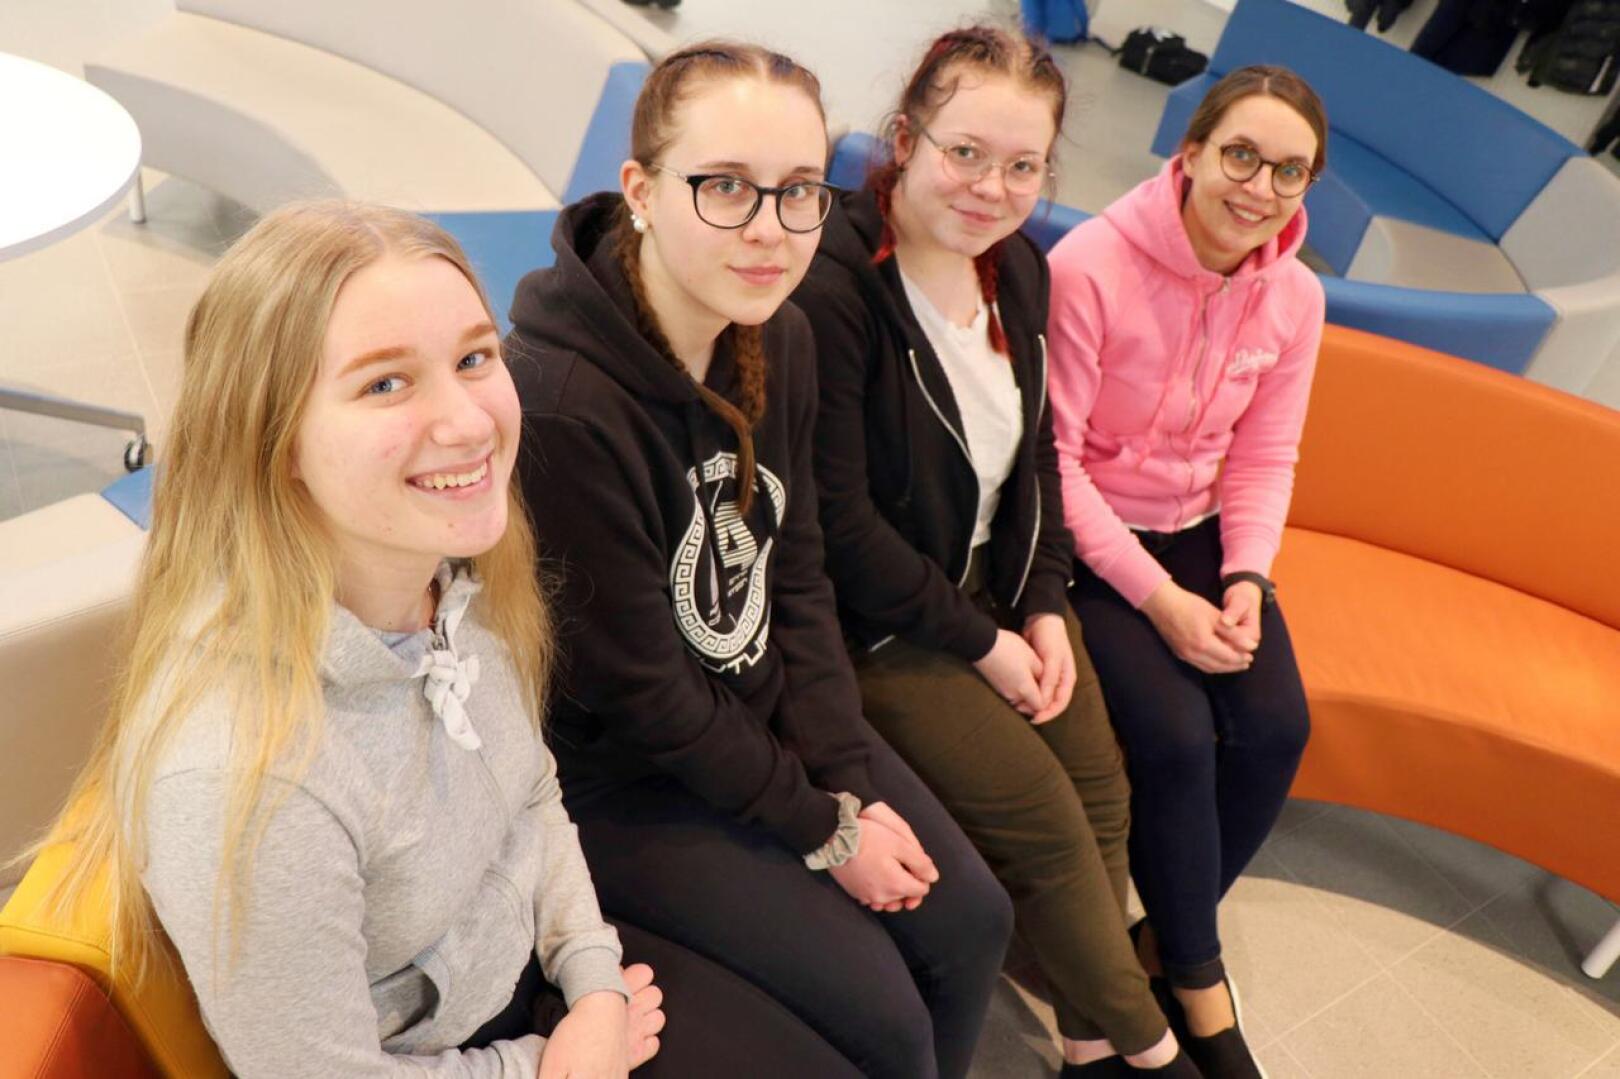 Perholaiset yhdeksäsluokkalaiset Silvia Flink, Aada Peltokangas ja Miia Aho ovat täyttäneet jo hakupaperinsa opinto-ohjaaja Marika Riihimäen opastuksella.